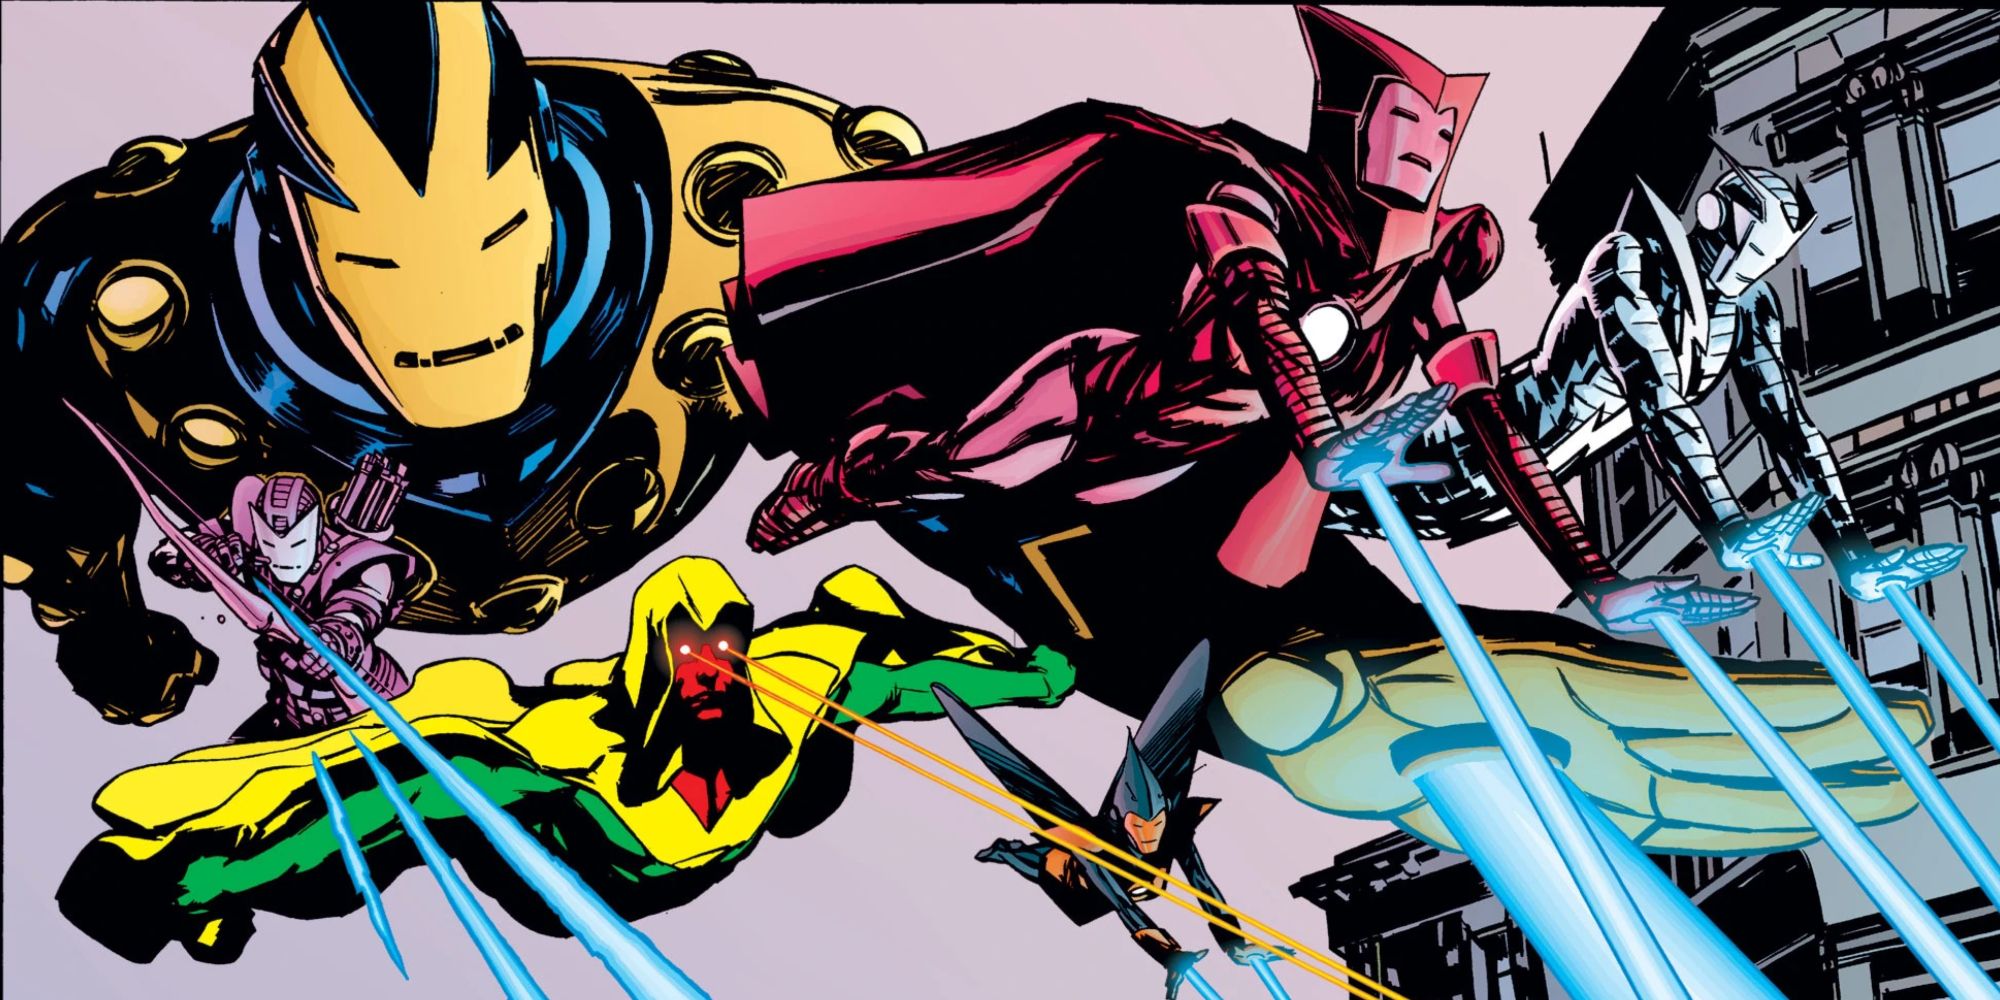 The Iron Men attack in Earth X comics.